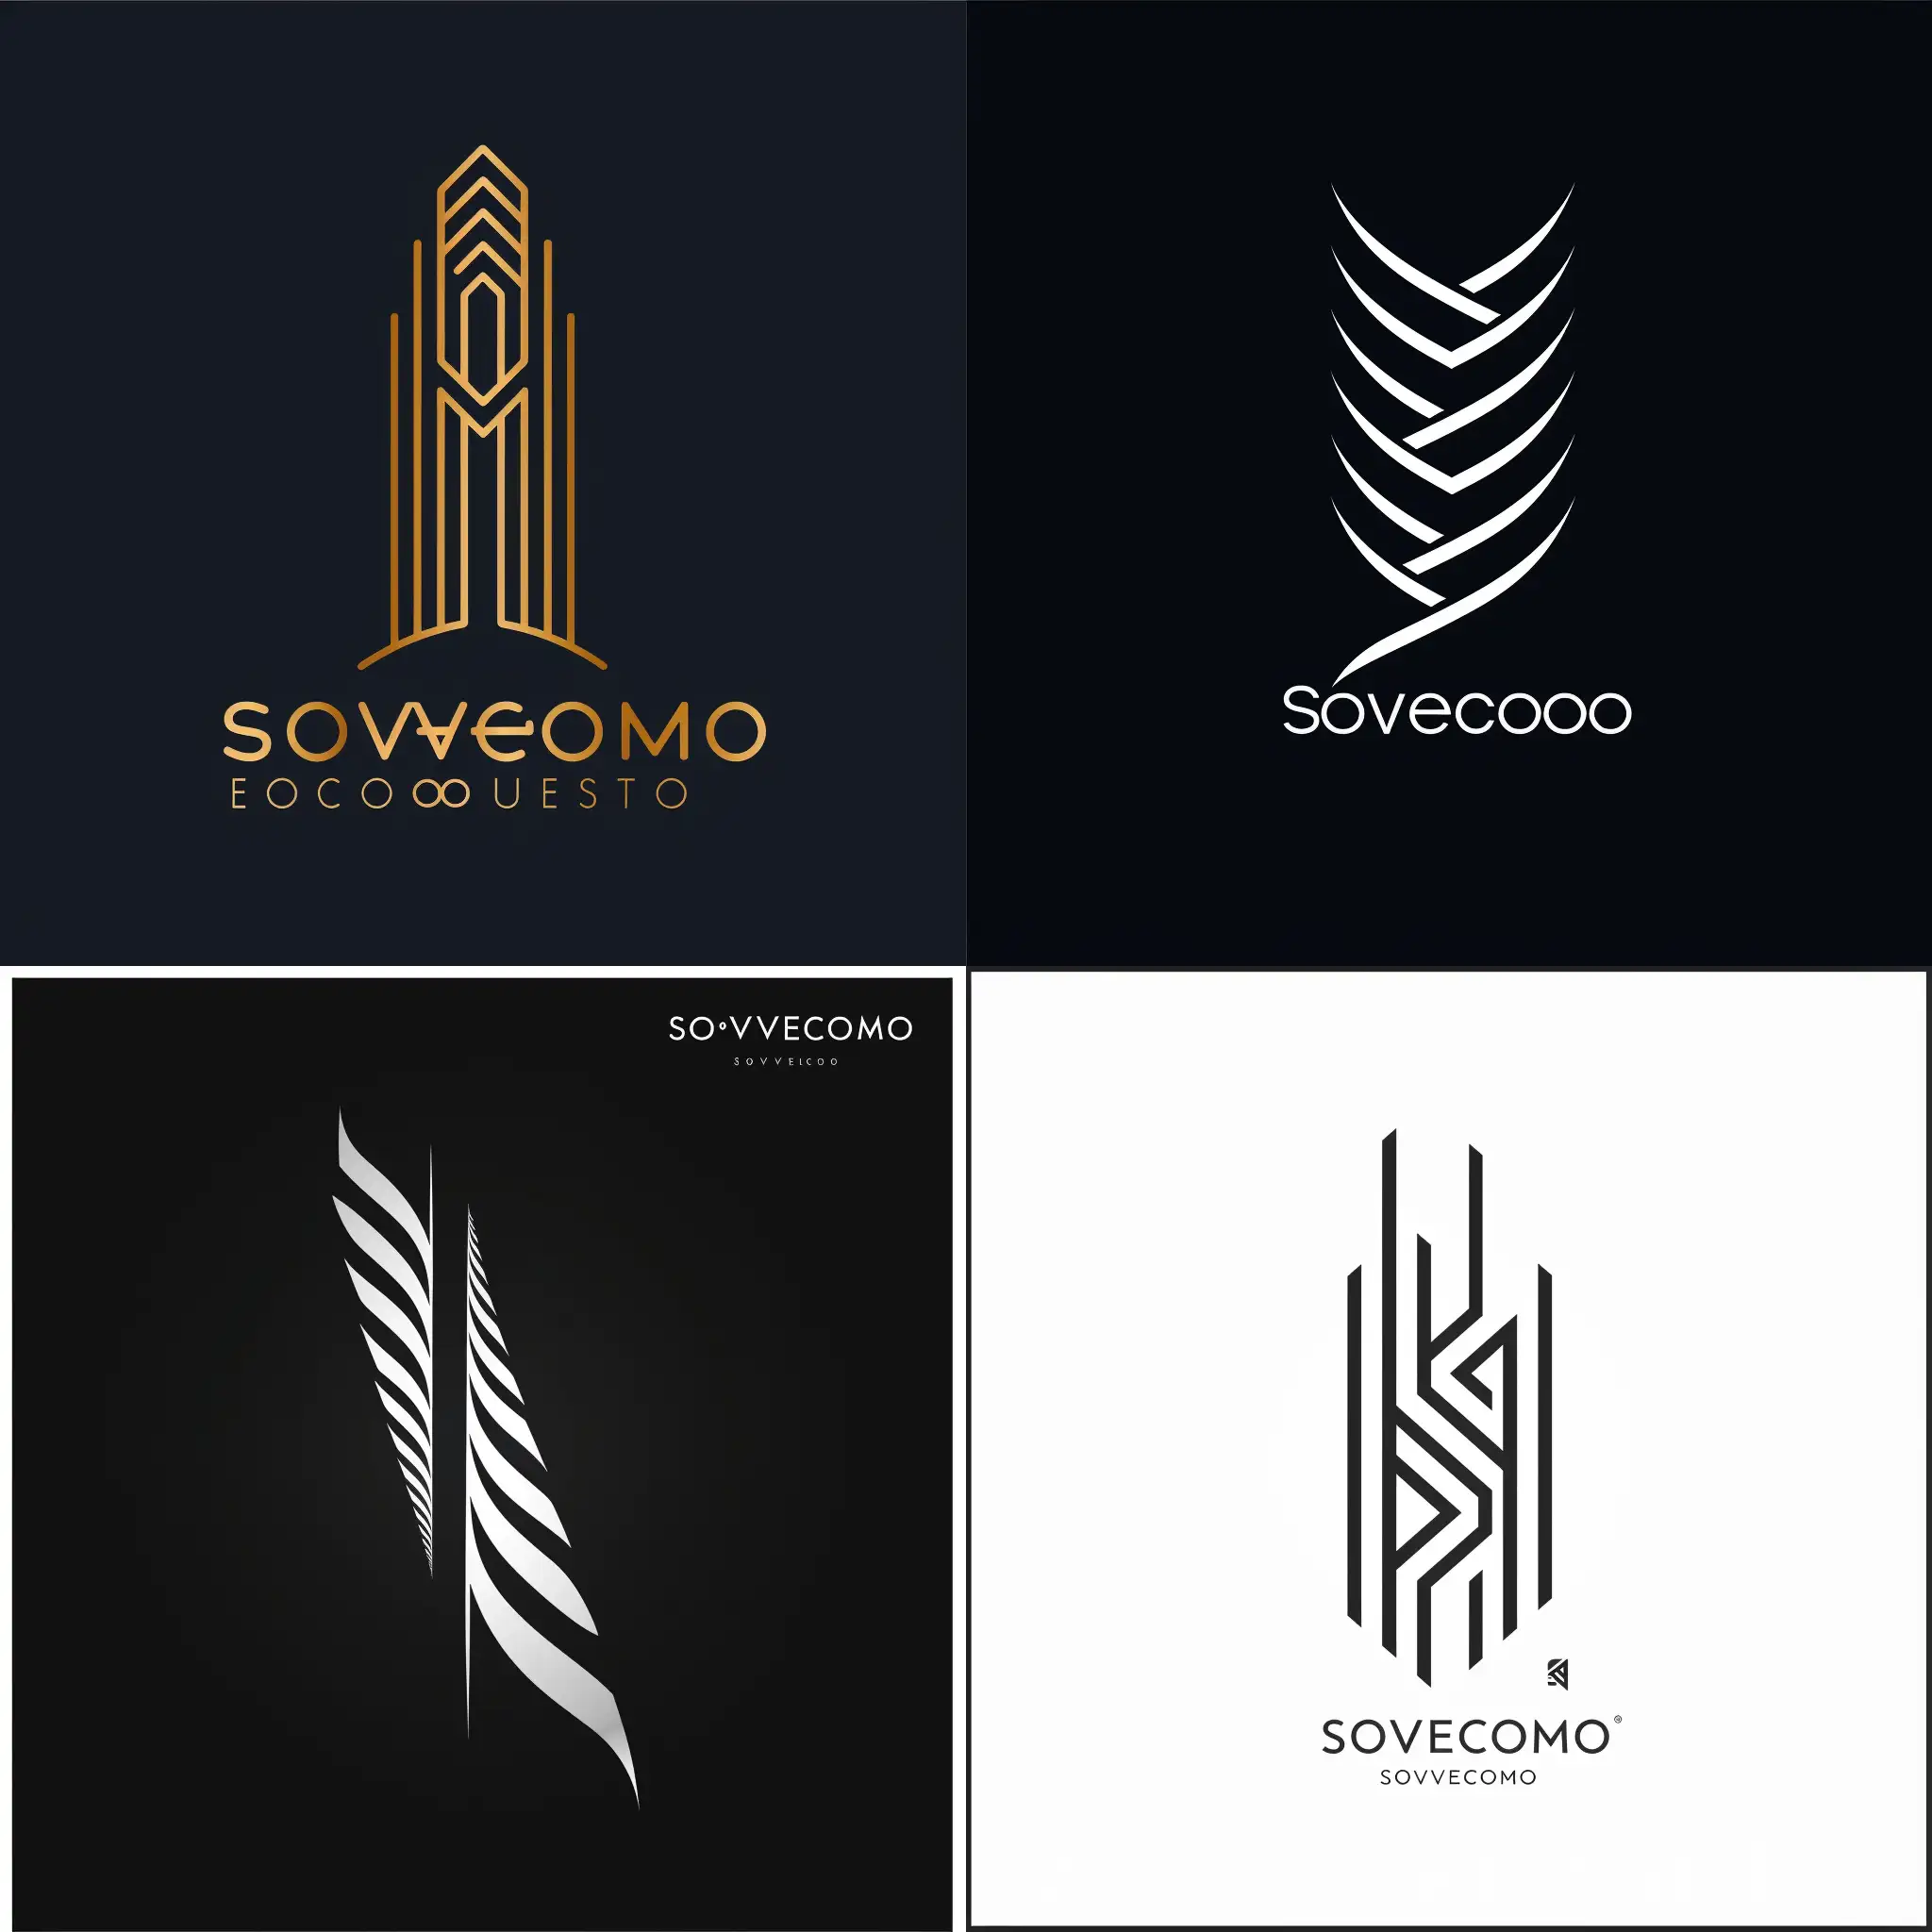 Sovecomo-Simplistic-Tower-Logo-for-Sovereign-Economics